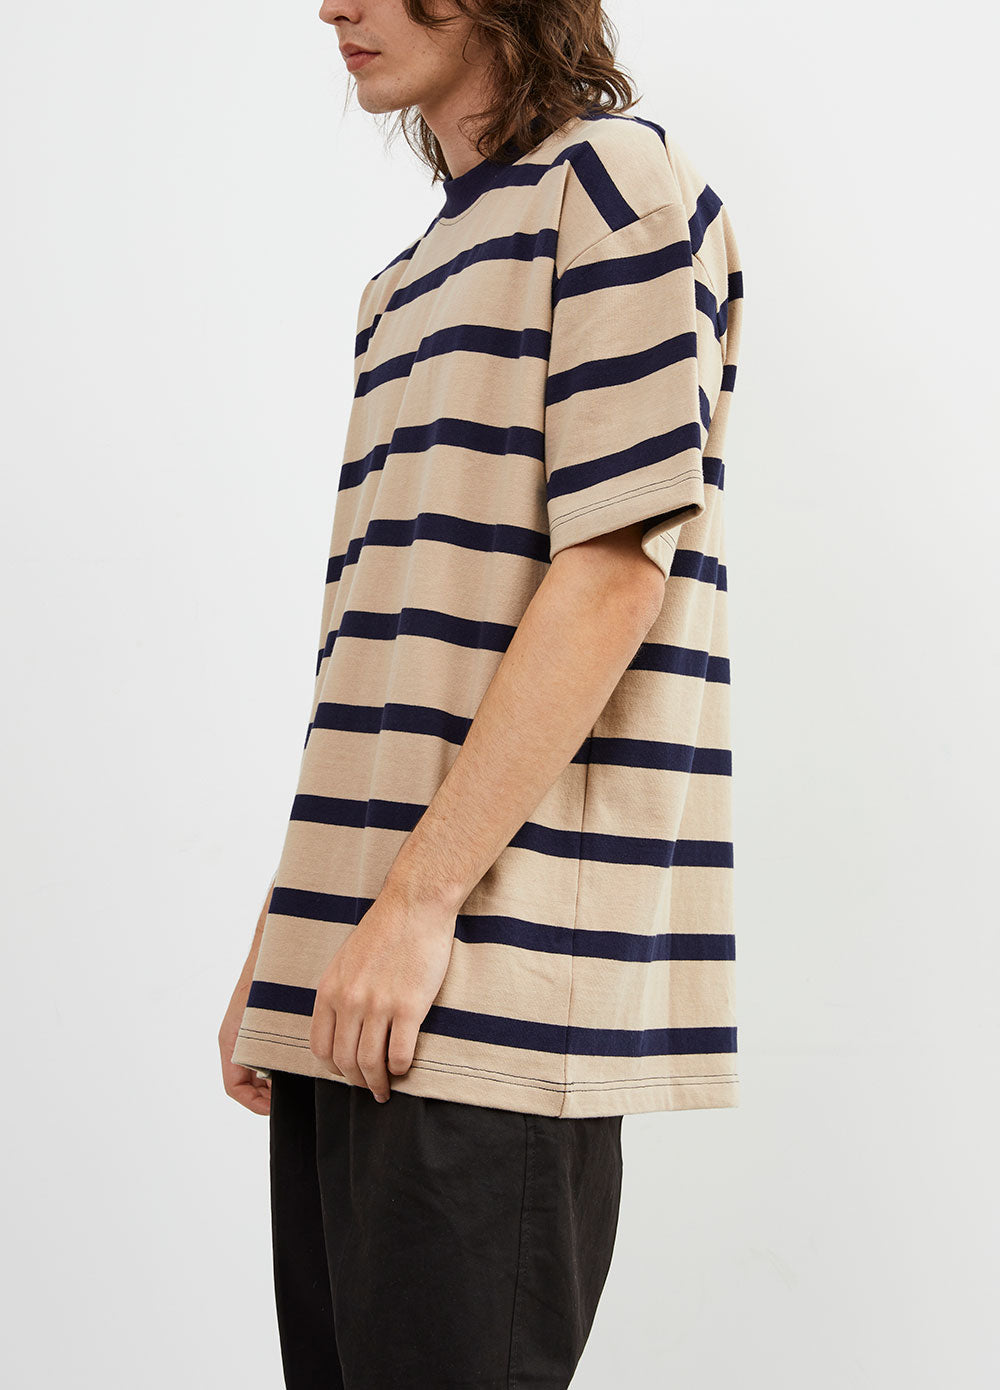 Benton Stripe T-shirt